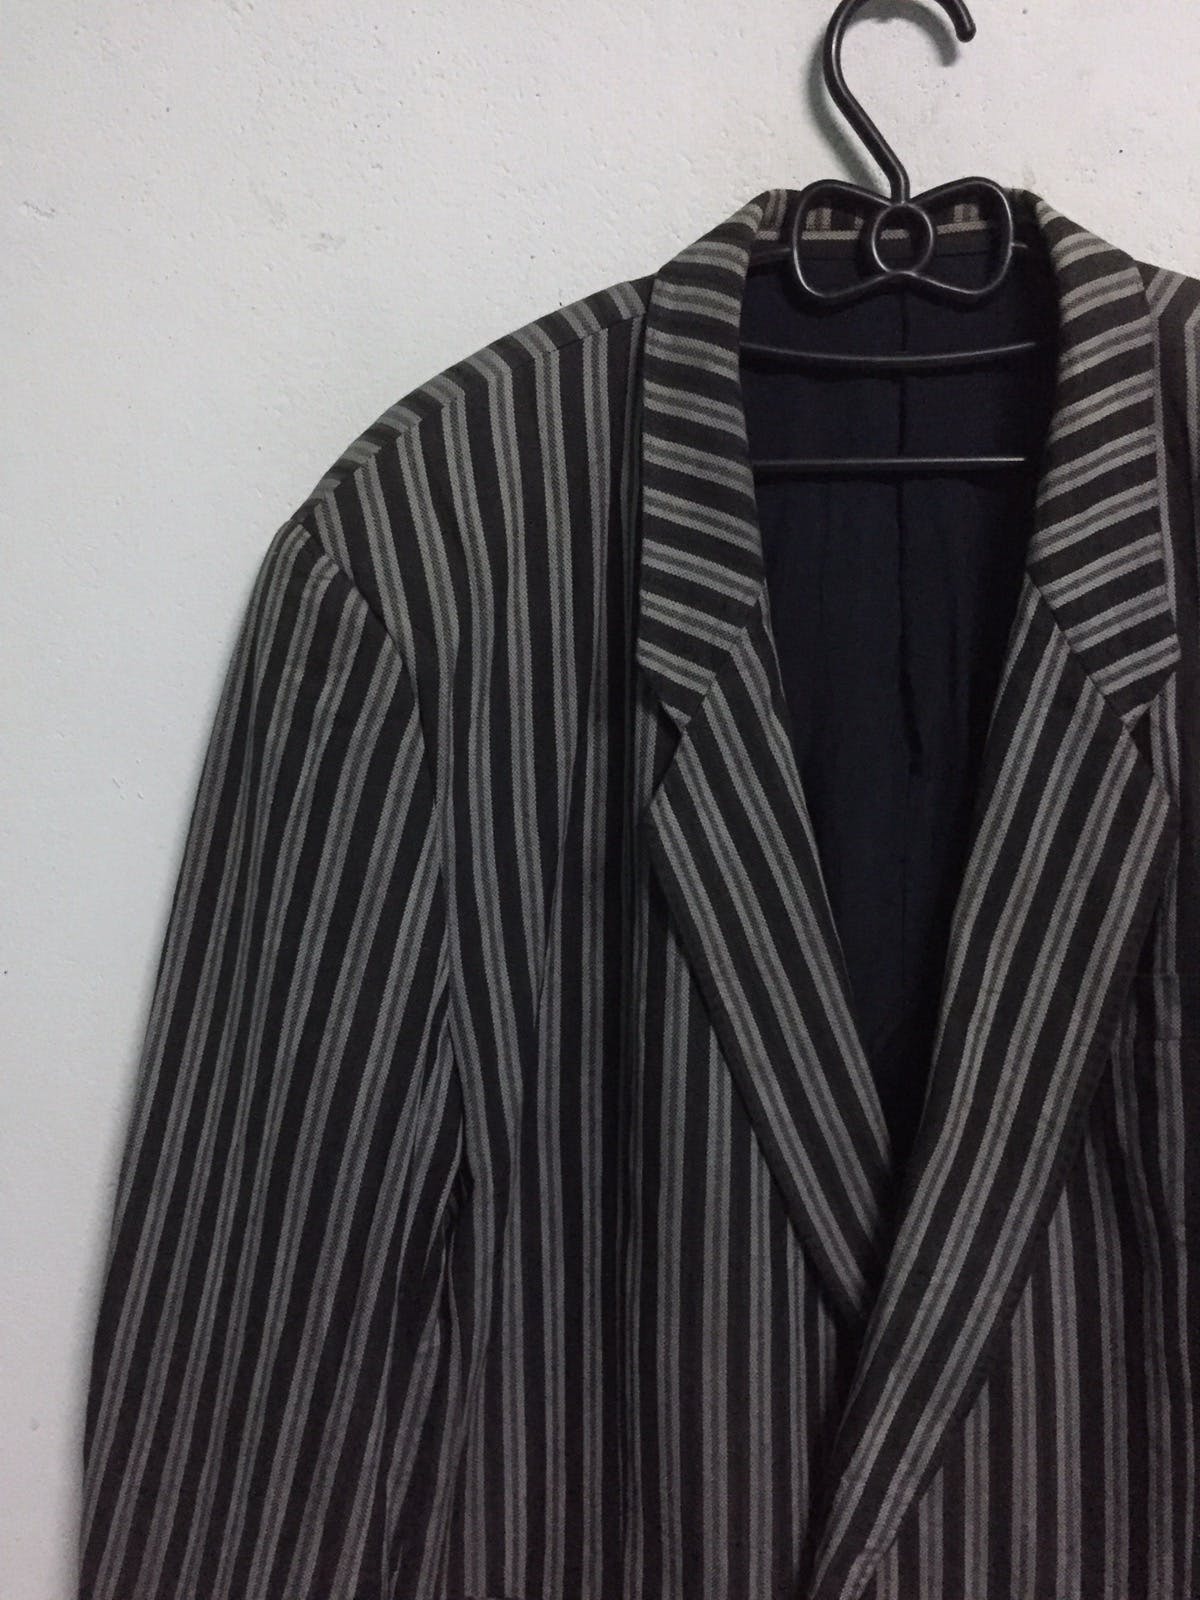 Kenzo Zebra Stripes Jacket Coat Made in Japan - 3